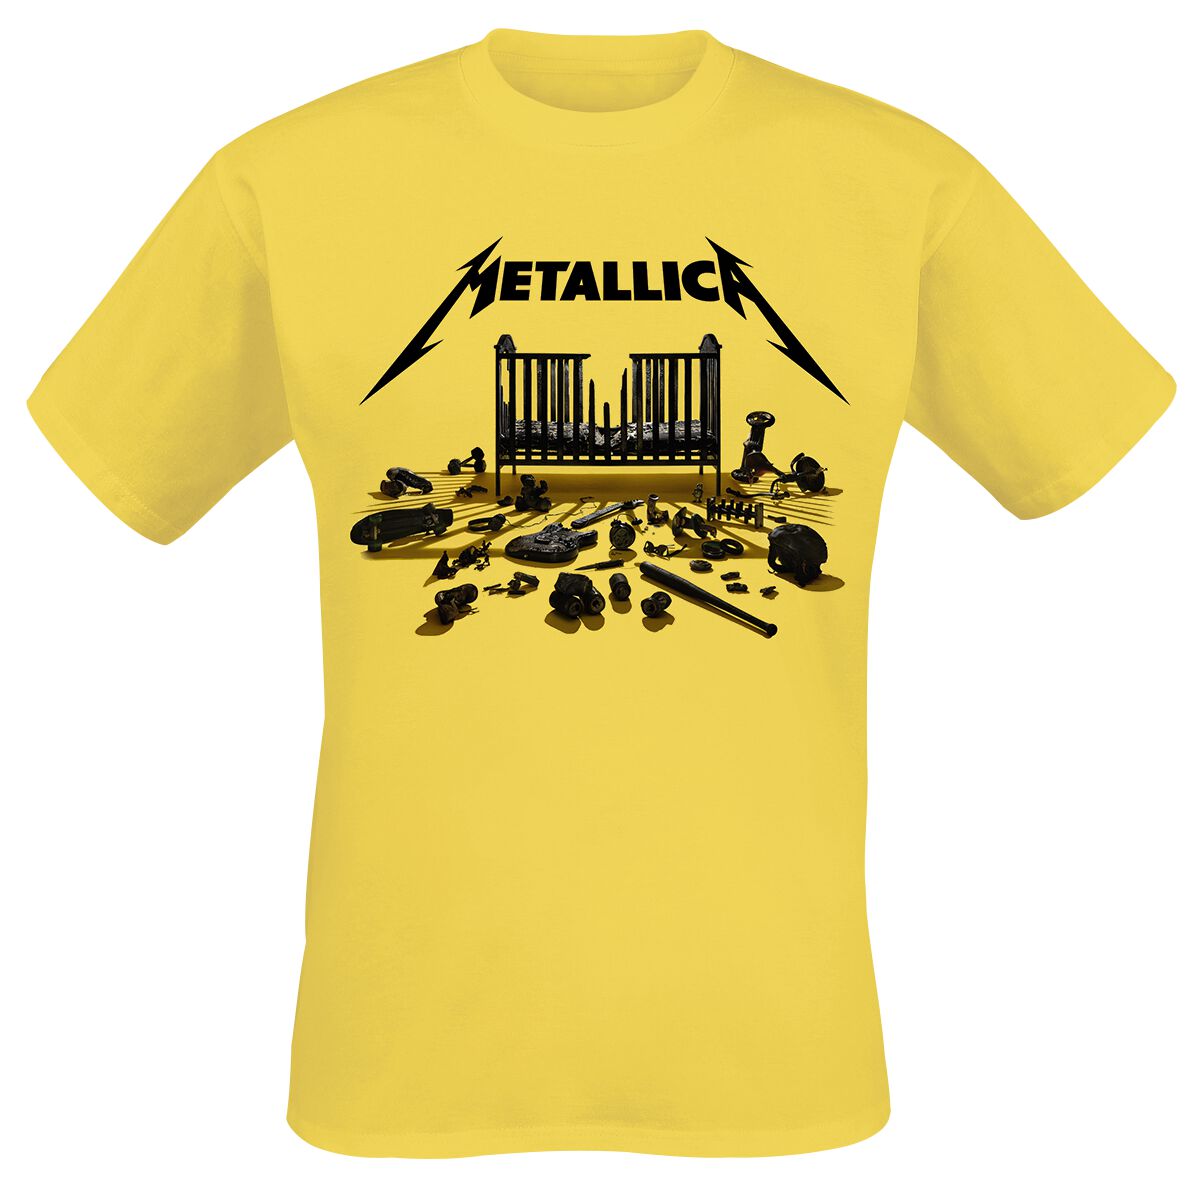 Metallica T-Shirt - Simplified Cover (M72) - S bis 3XL - für Männer - Größe M - gelb  - Lizenziertes Merchandise!